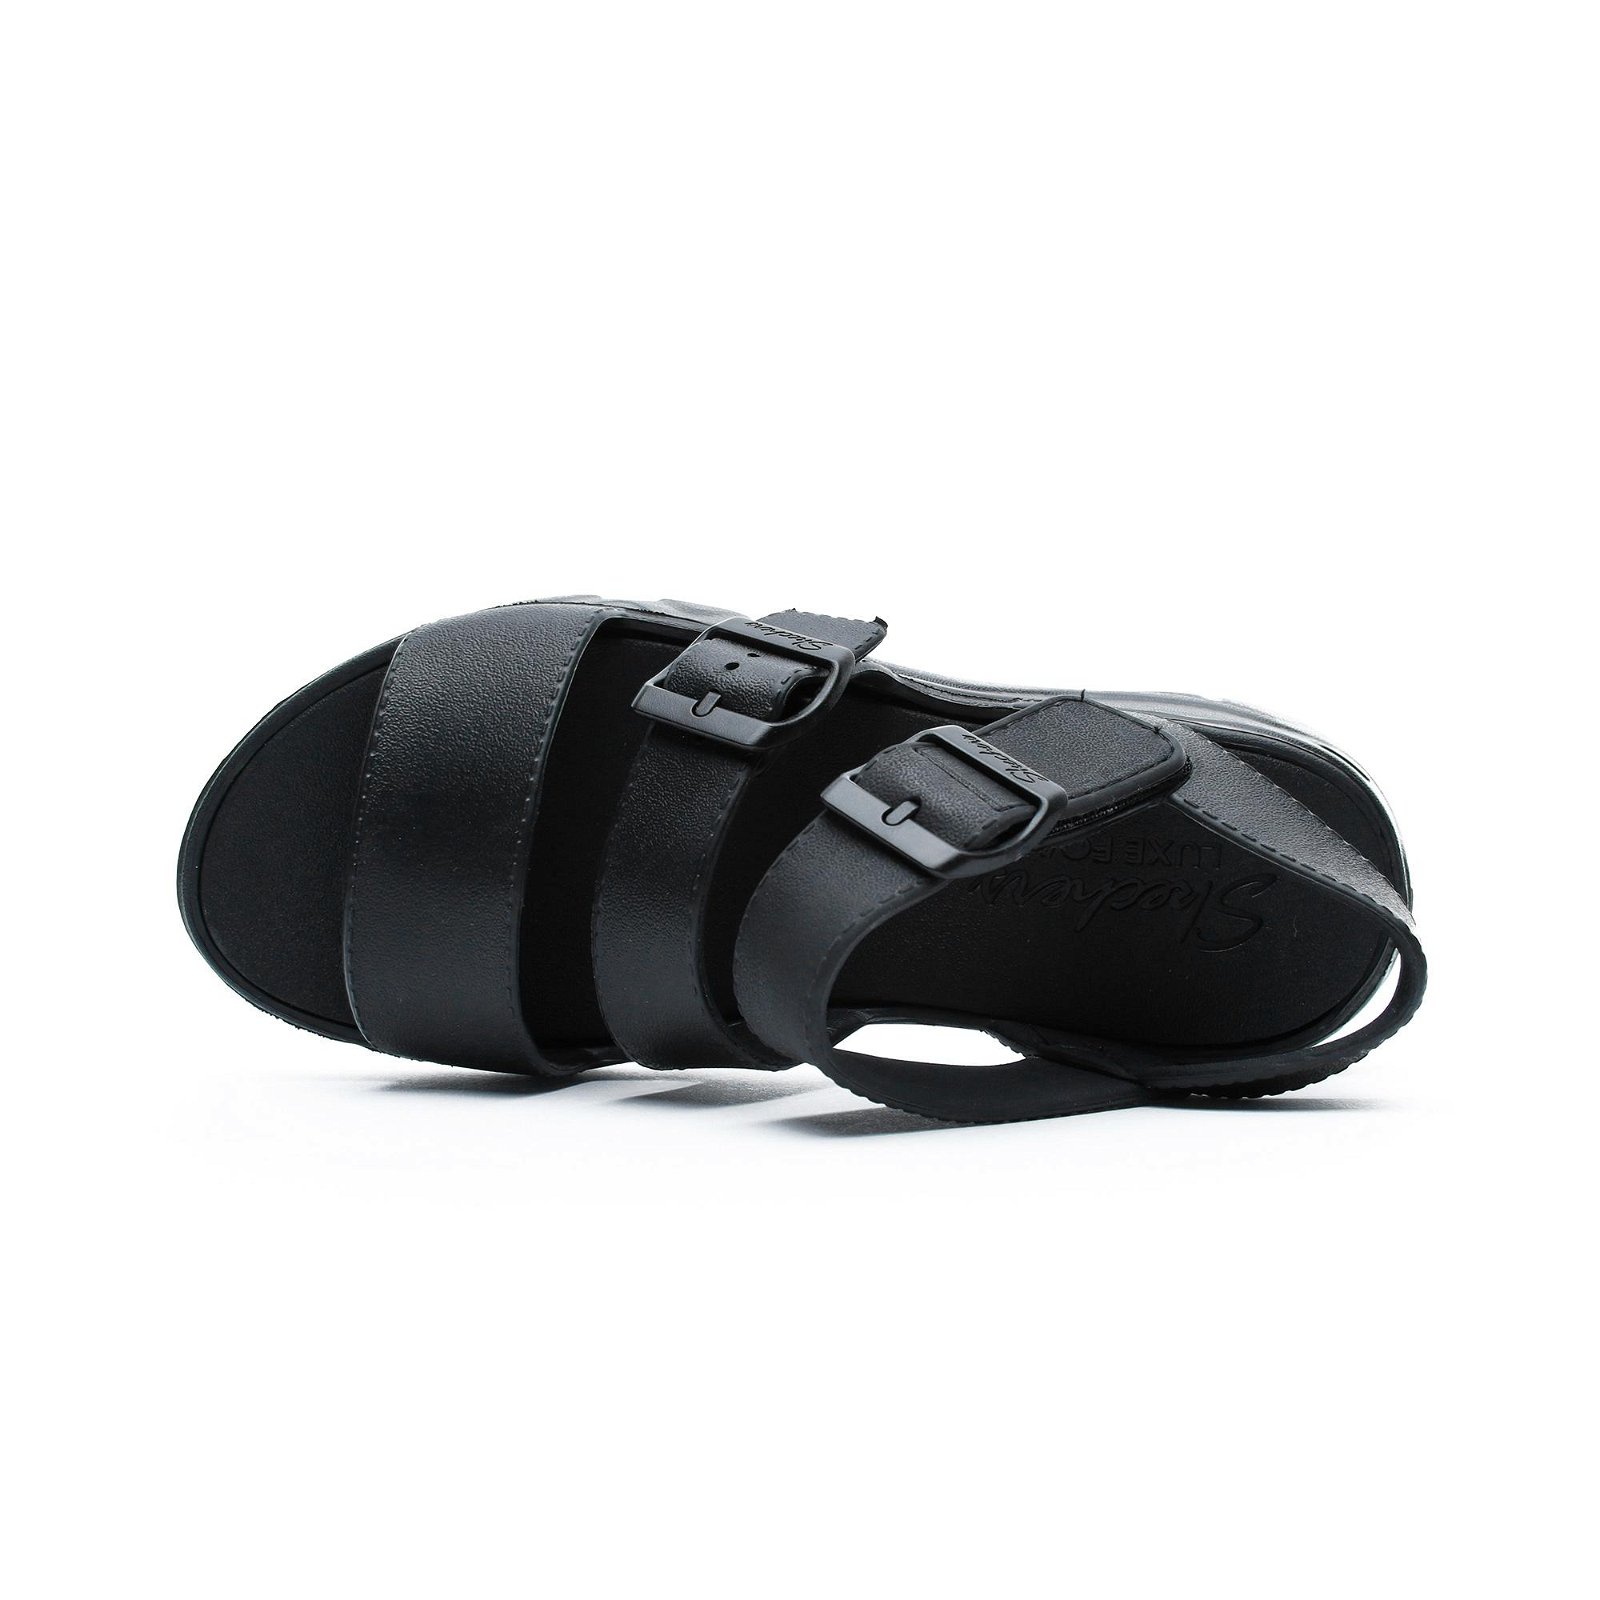  Skechers D Lites 2,0- Style Incon Kadın Siyah Sandalet